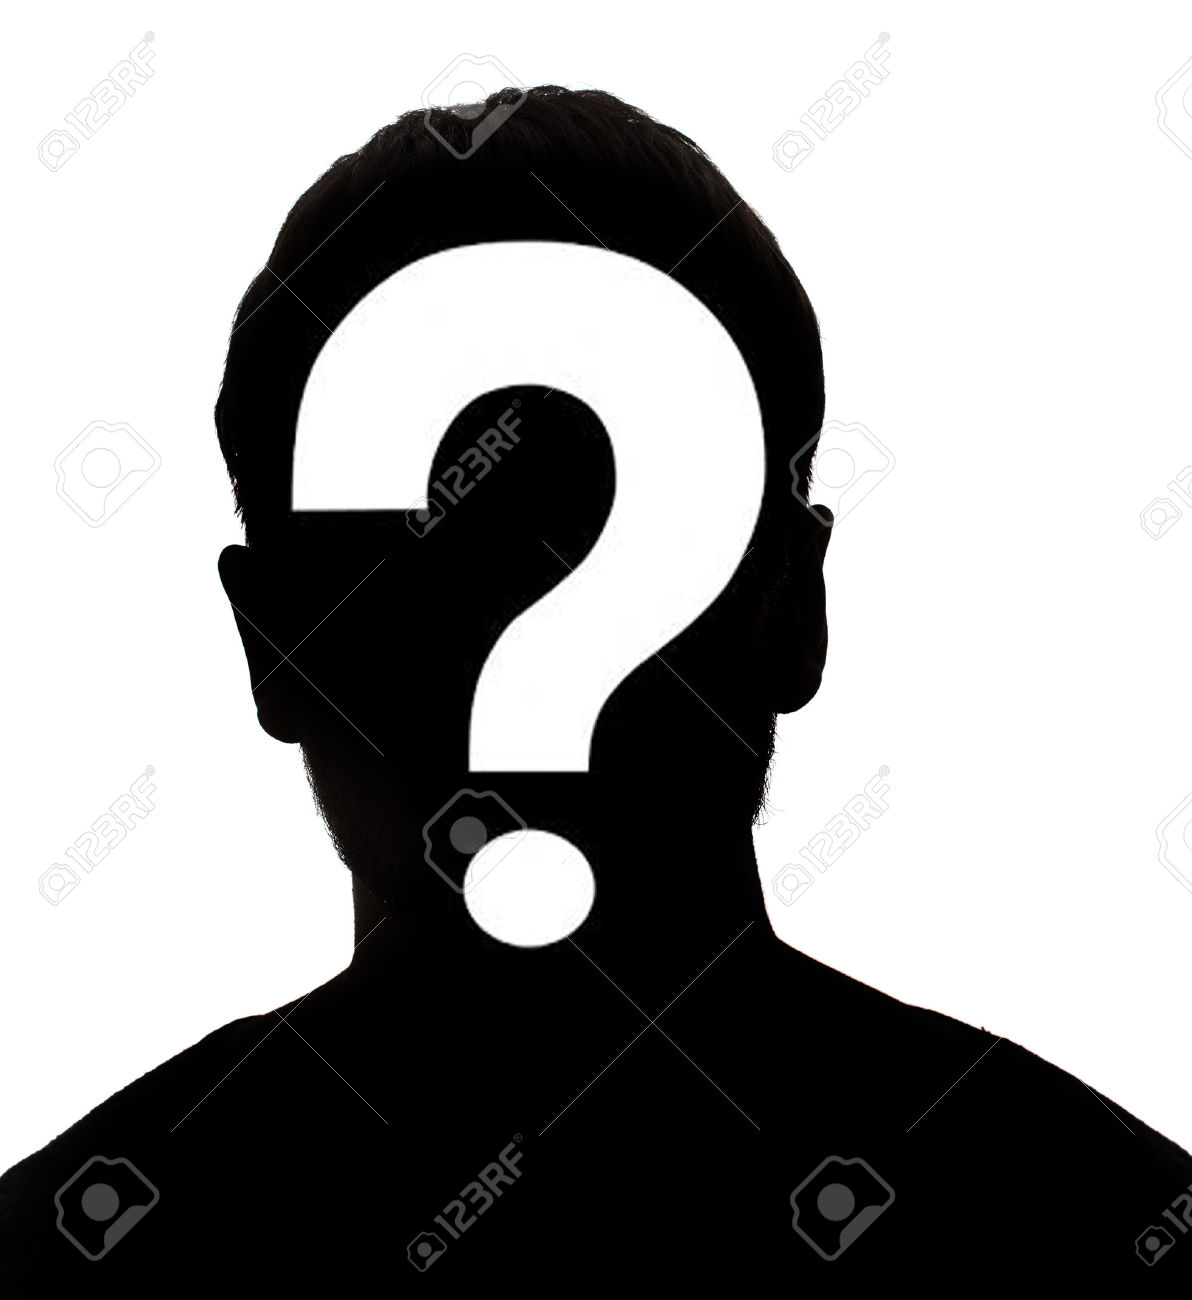 Unbekannte Männliche Person Silhouette Lizenzfreie Bilder   29470178 - Unbekannte Person, Transparent background PNG HD thumbnail